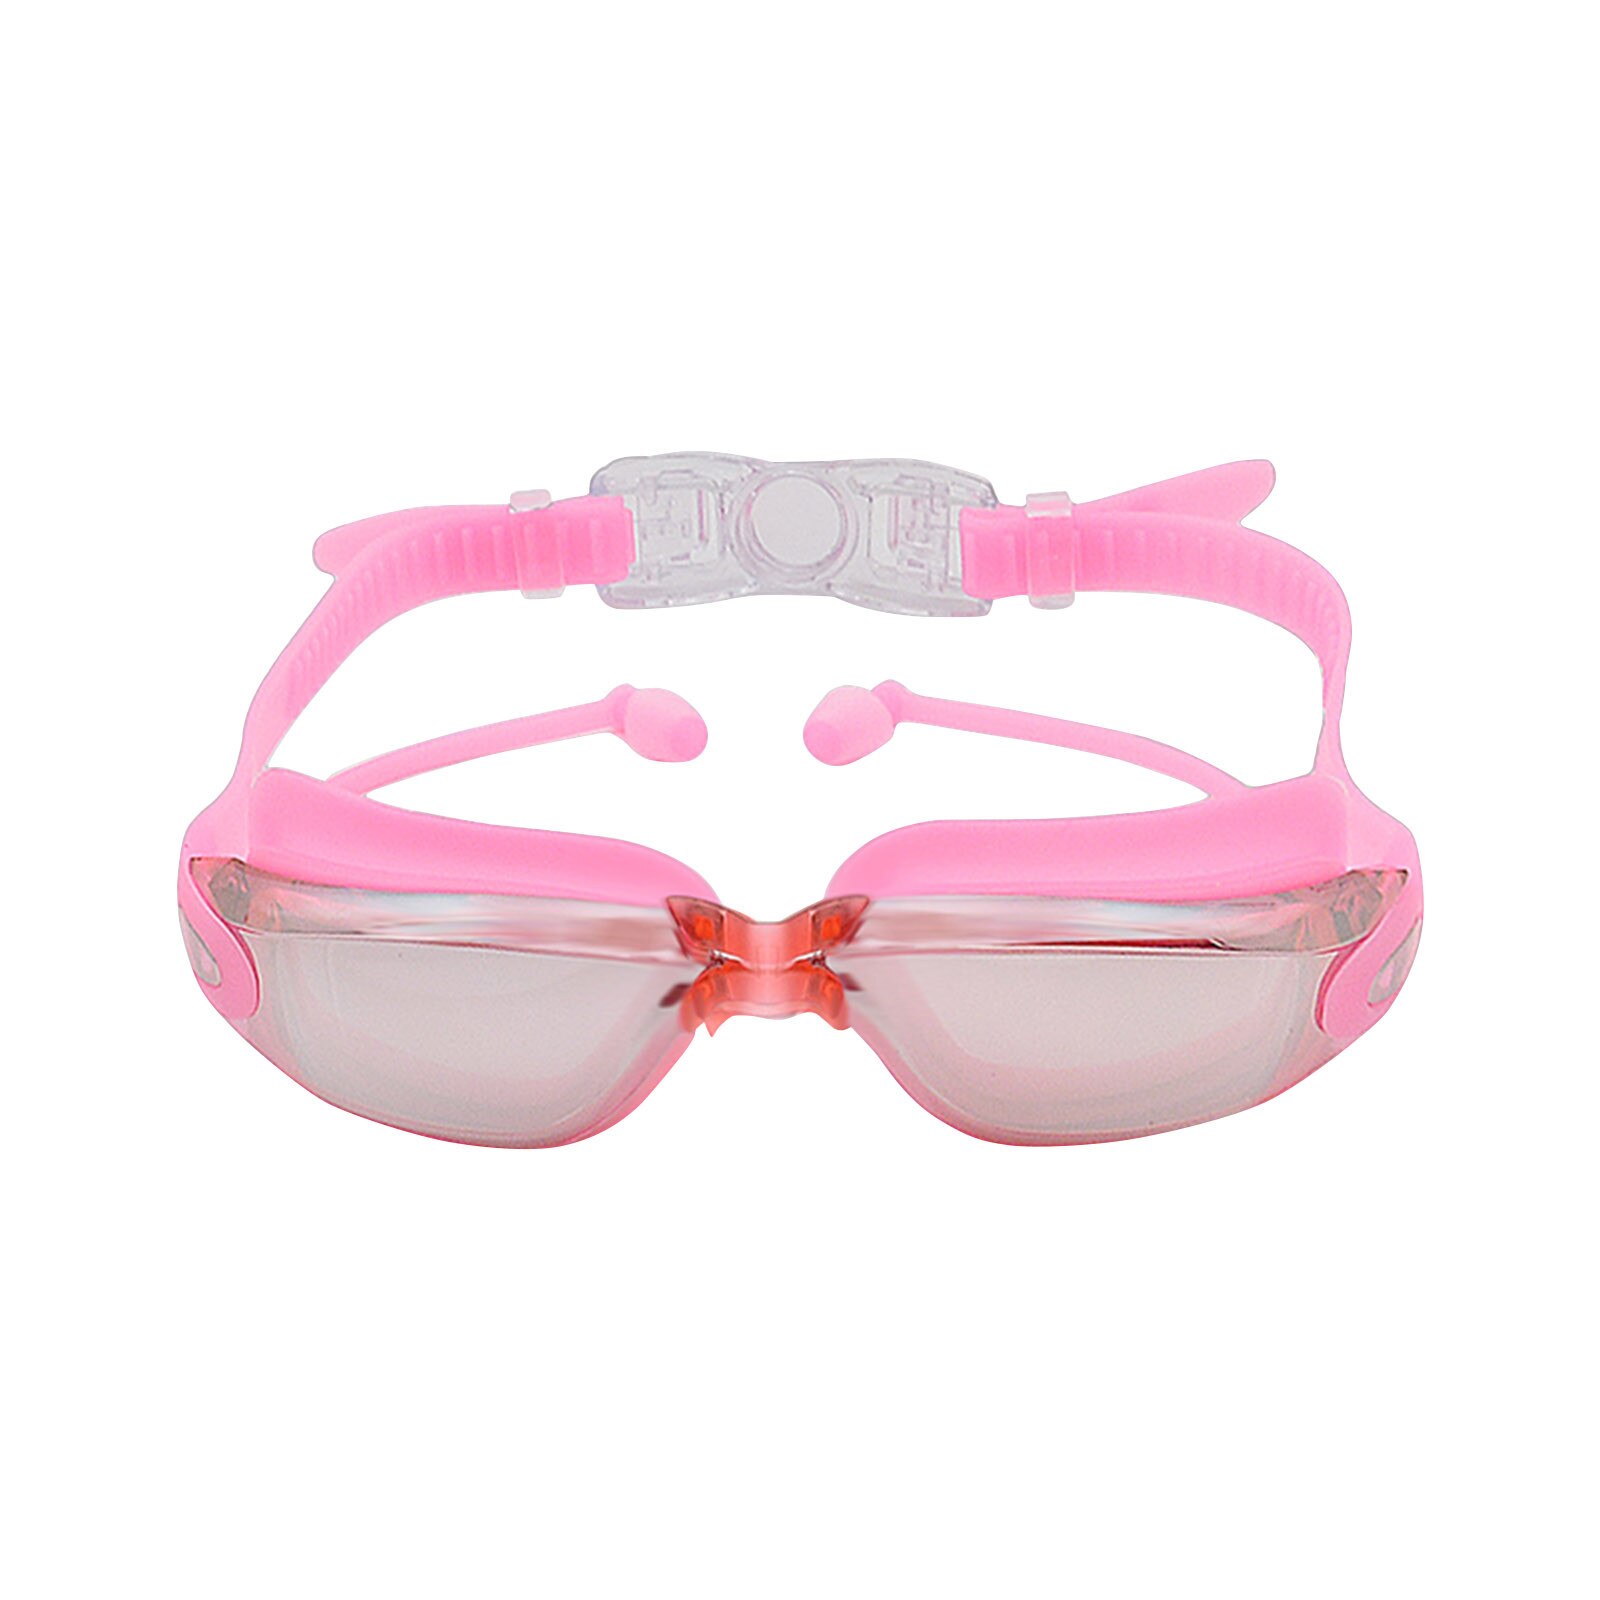 2 In 1 Volwassen Hd Waterdicht En Anti-Fog Siliconen Zwembril Met Oordopjes Anti-Vertigo Duiken Bril voor Beginners: PK